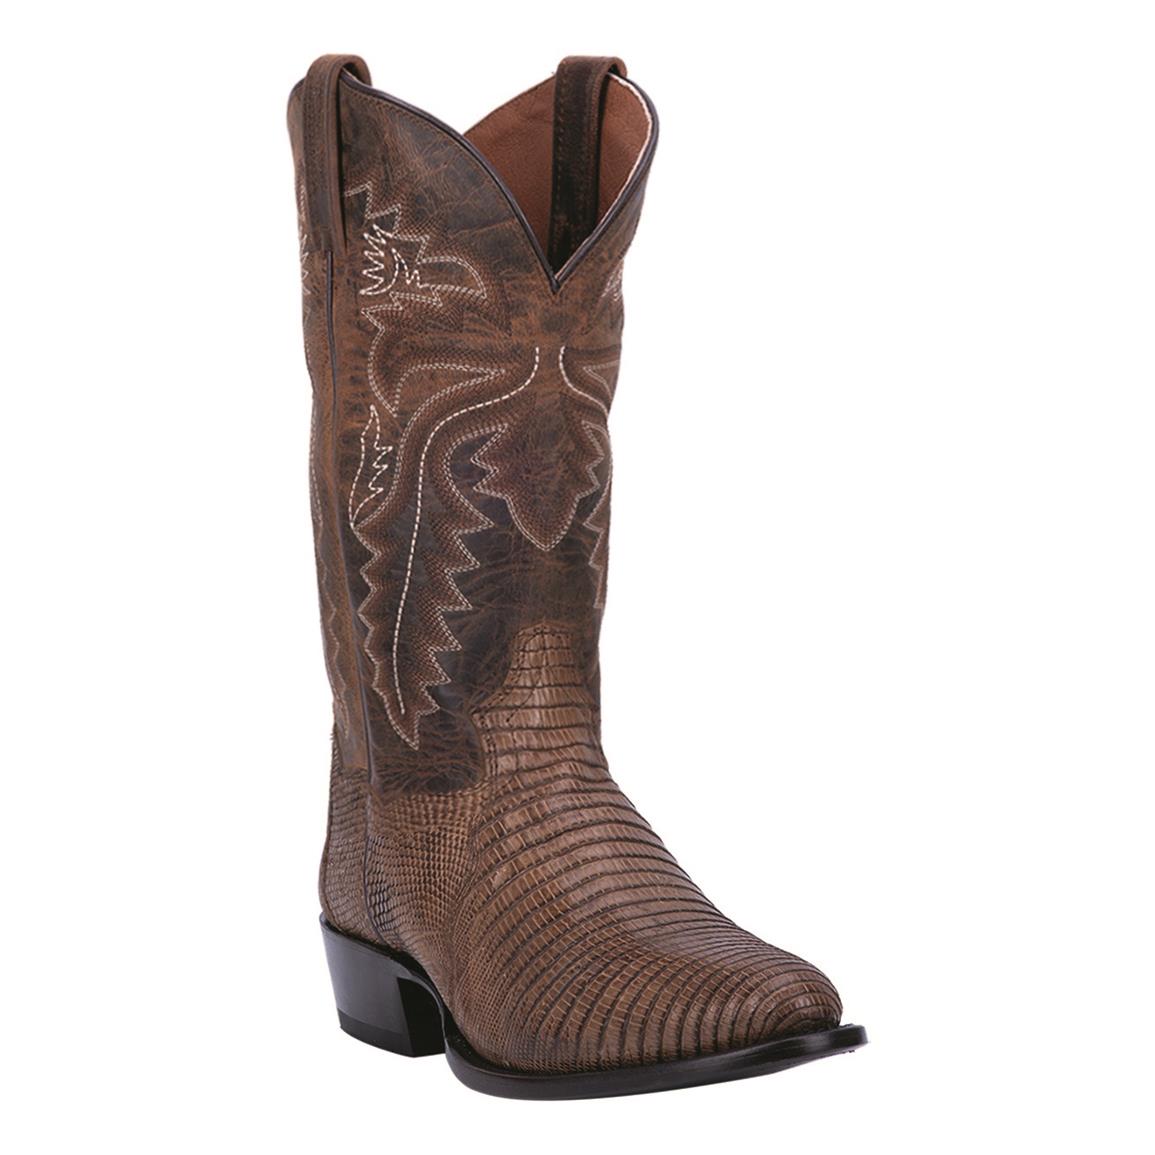 Dan Post Men's Winston Lizard Western Boots, Bay Apache